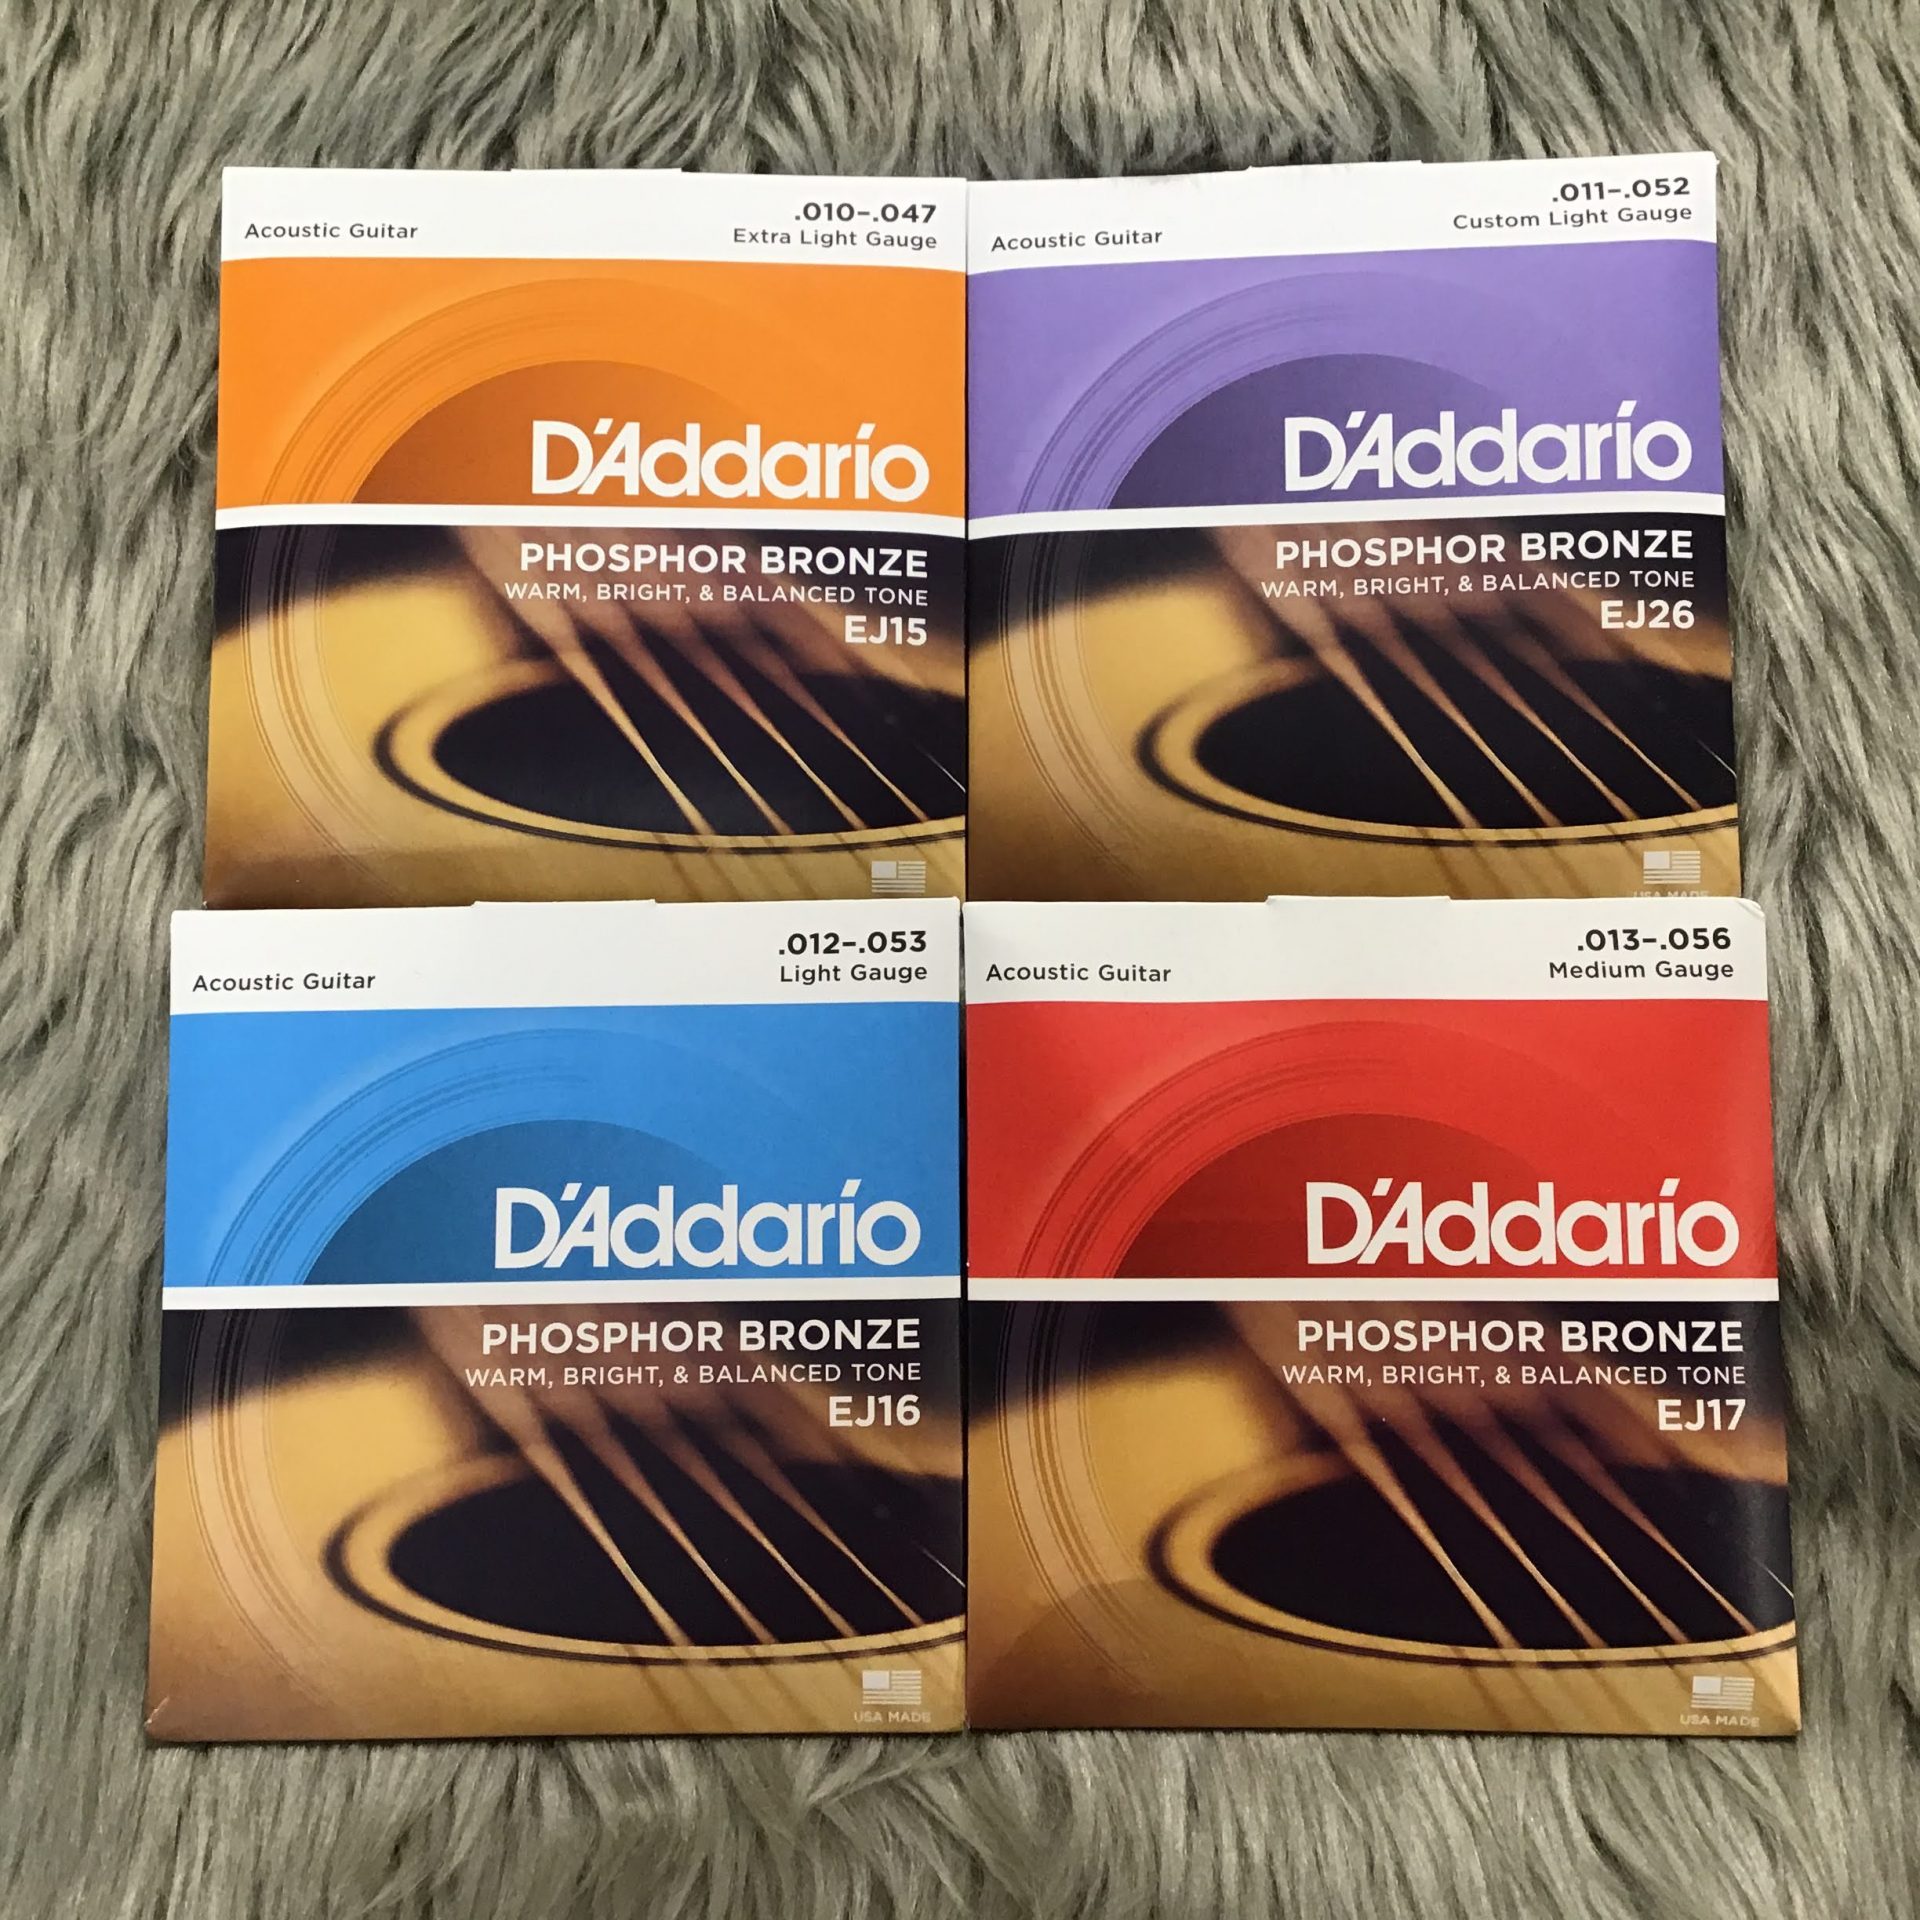 D'Addario ダダリオ アコースティックギター弦 フォスファーブロンズ Extra Light .010-.047 EJ15 x 10